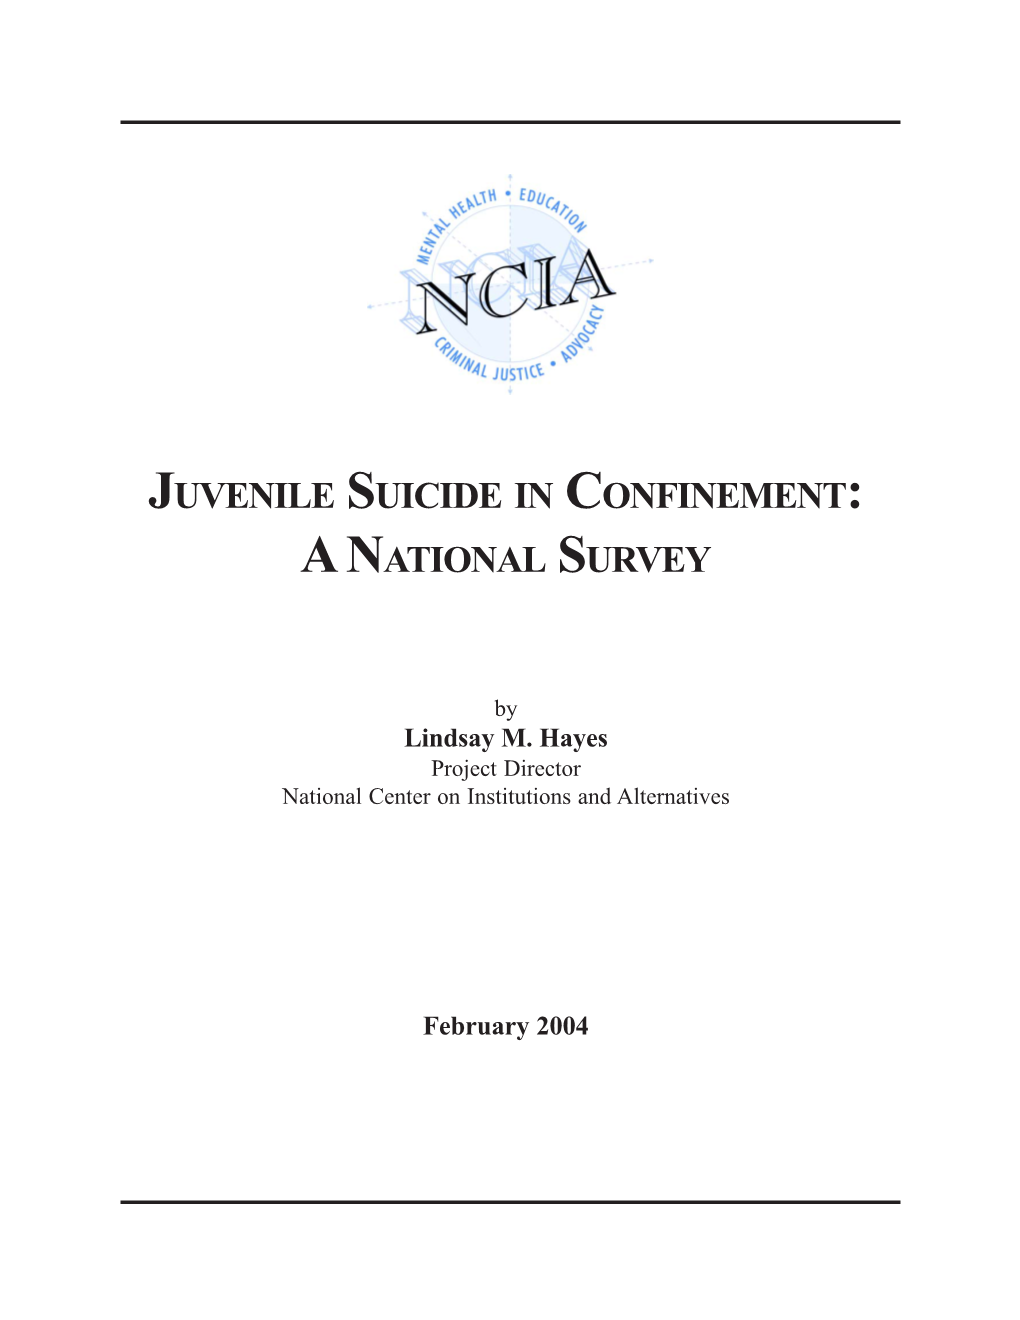 Juvenile Suicide in Confinement: a National Survey